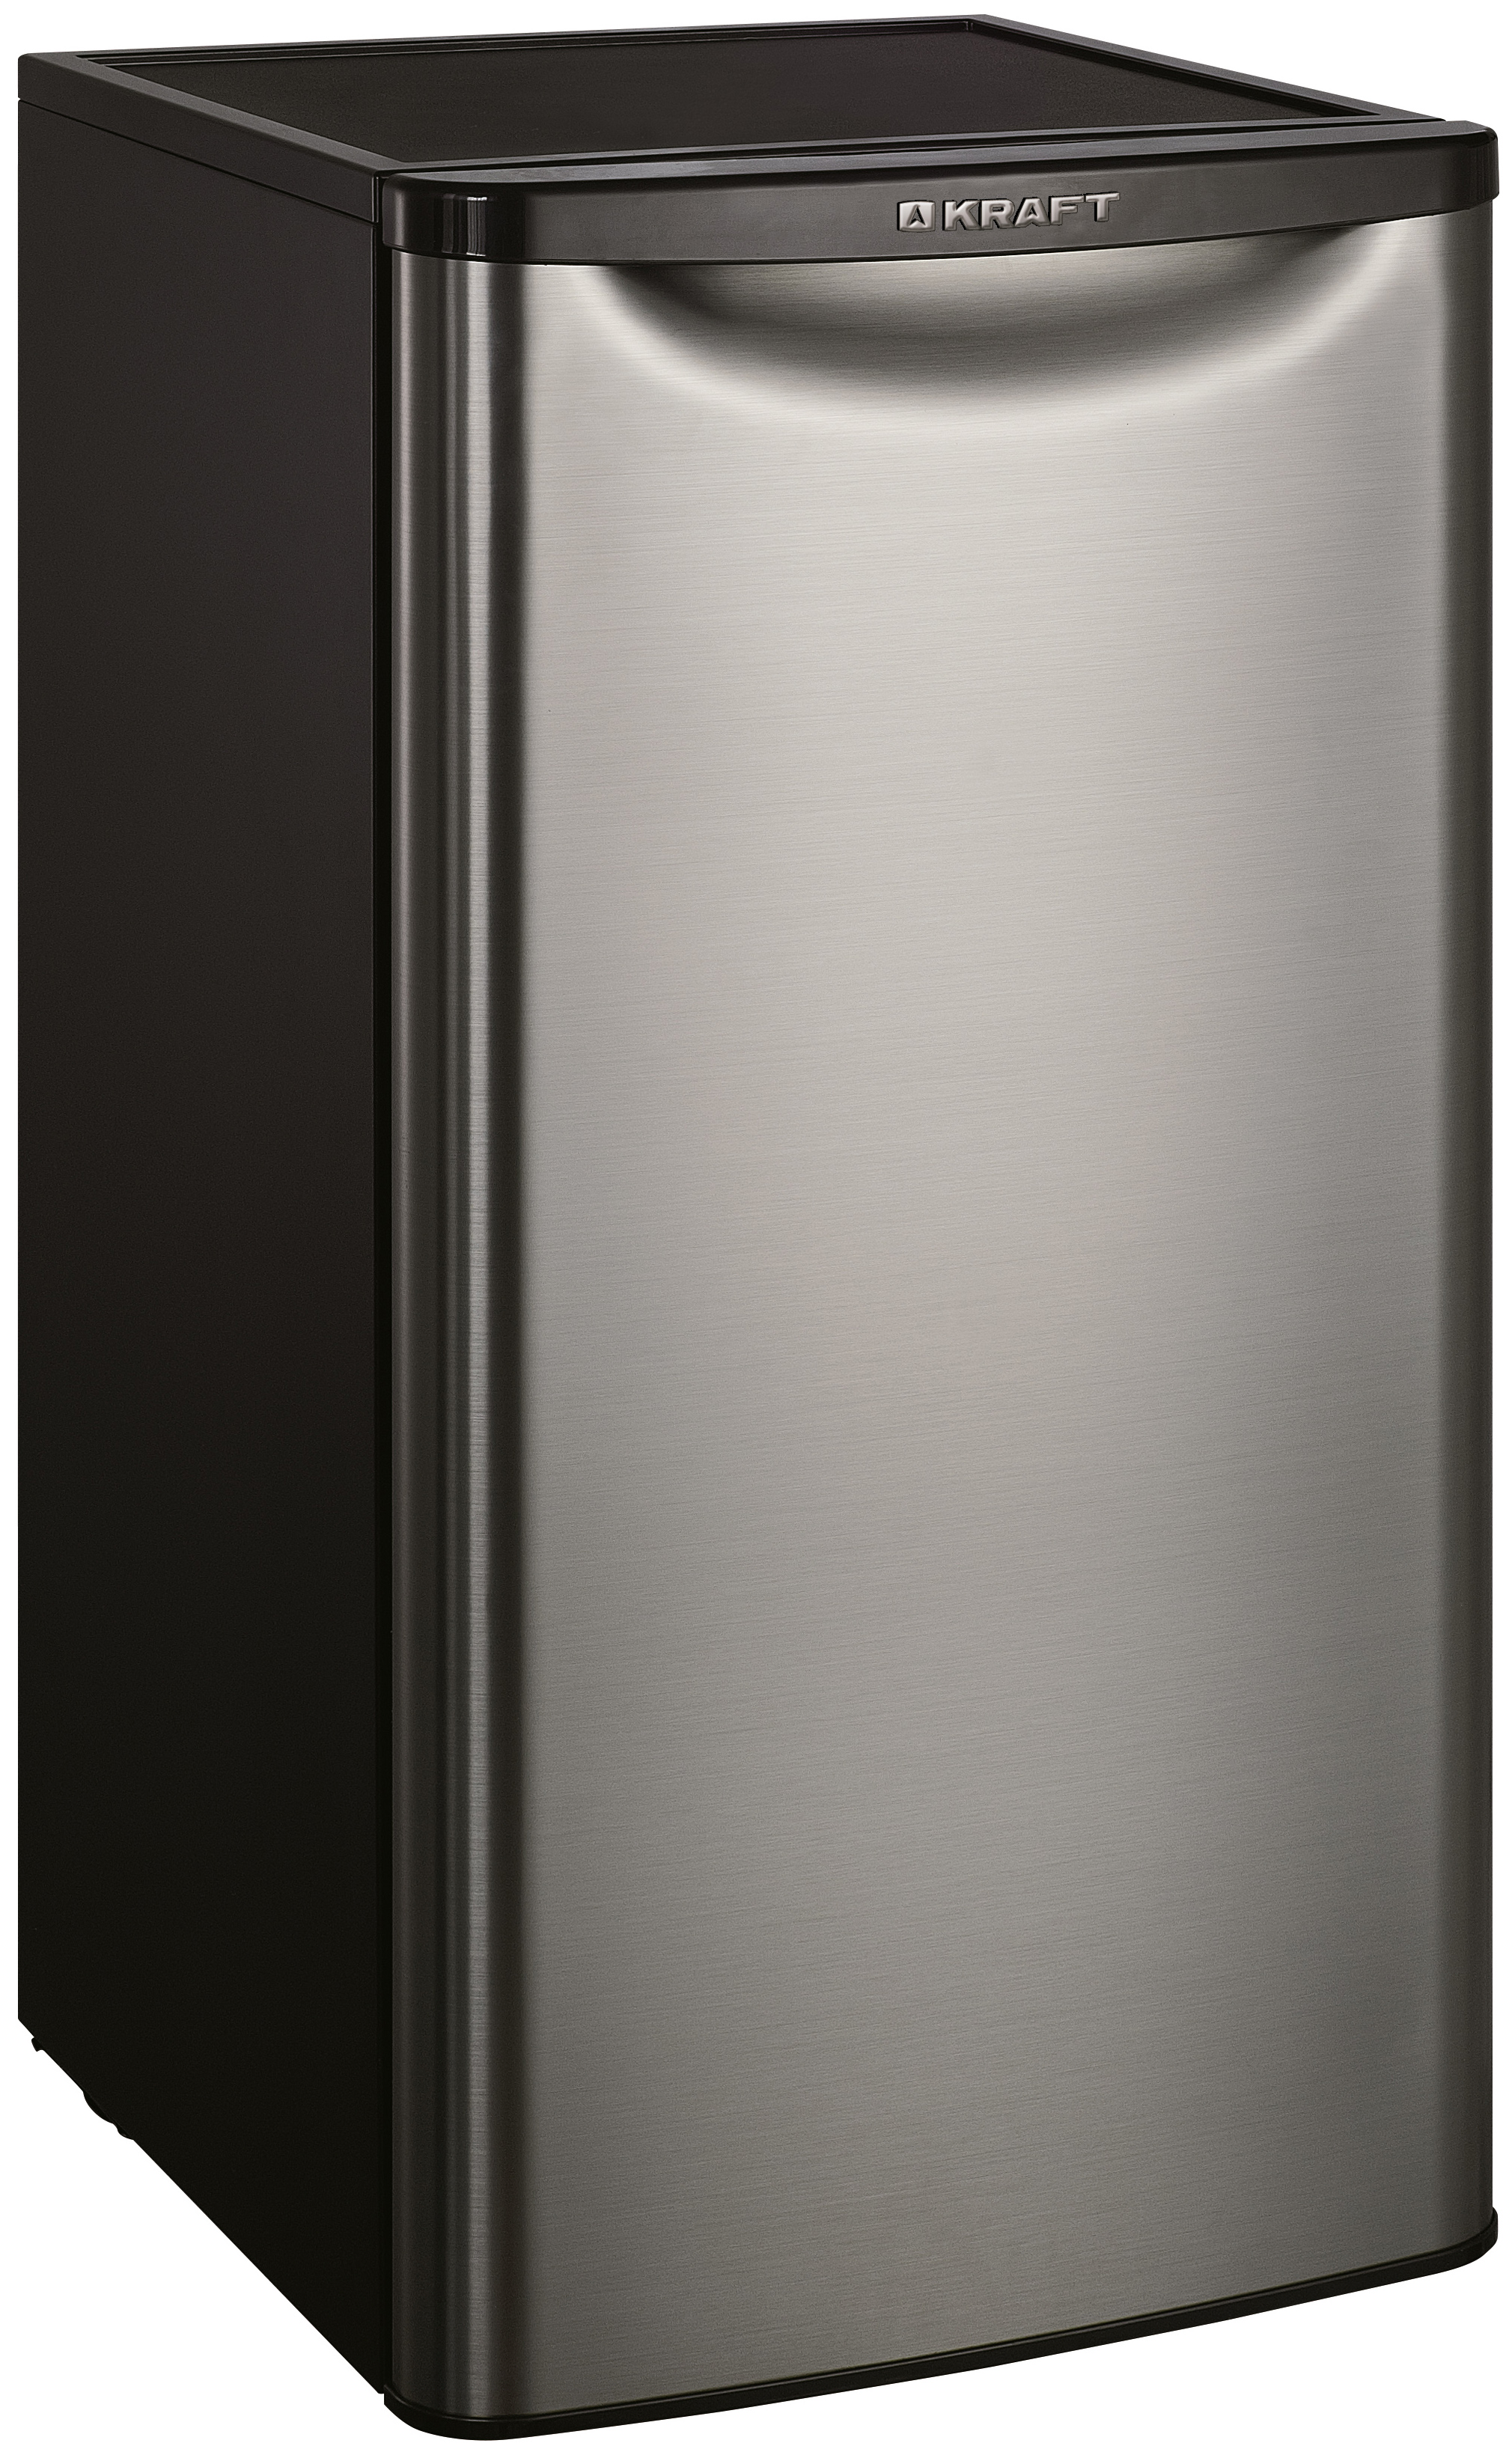 Холодильник KRAFT BR-95I серебристый однокамерный холодильник позис rs 416 серебристый